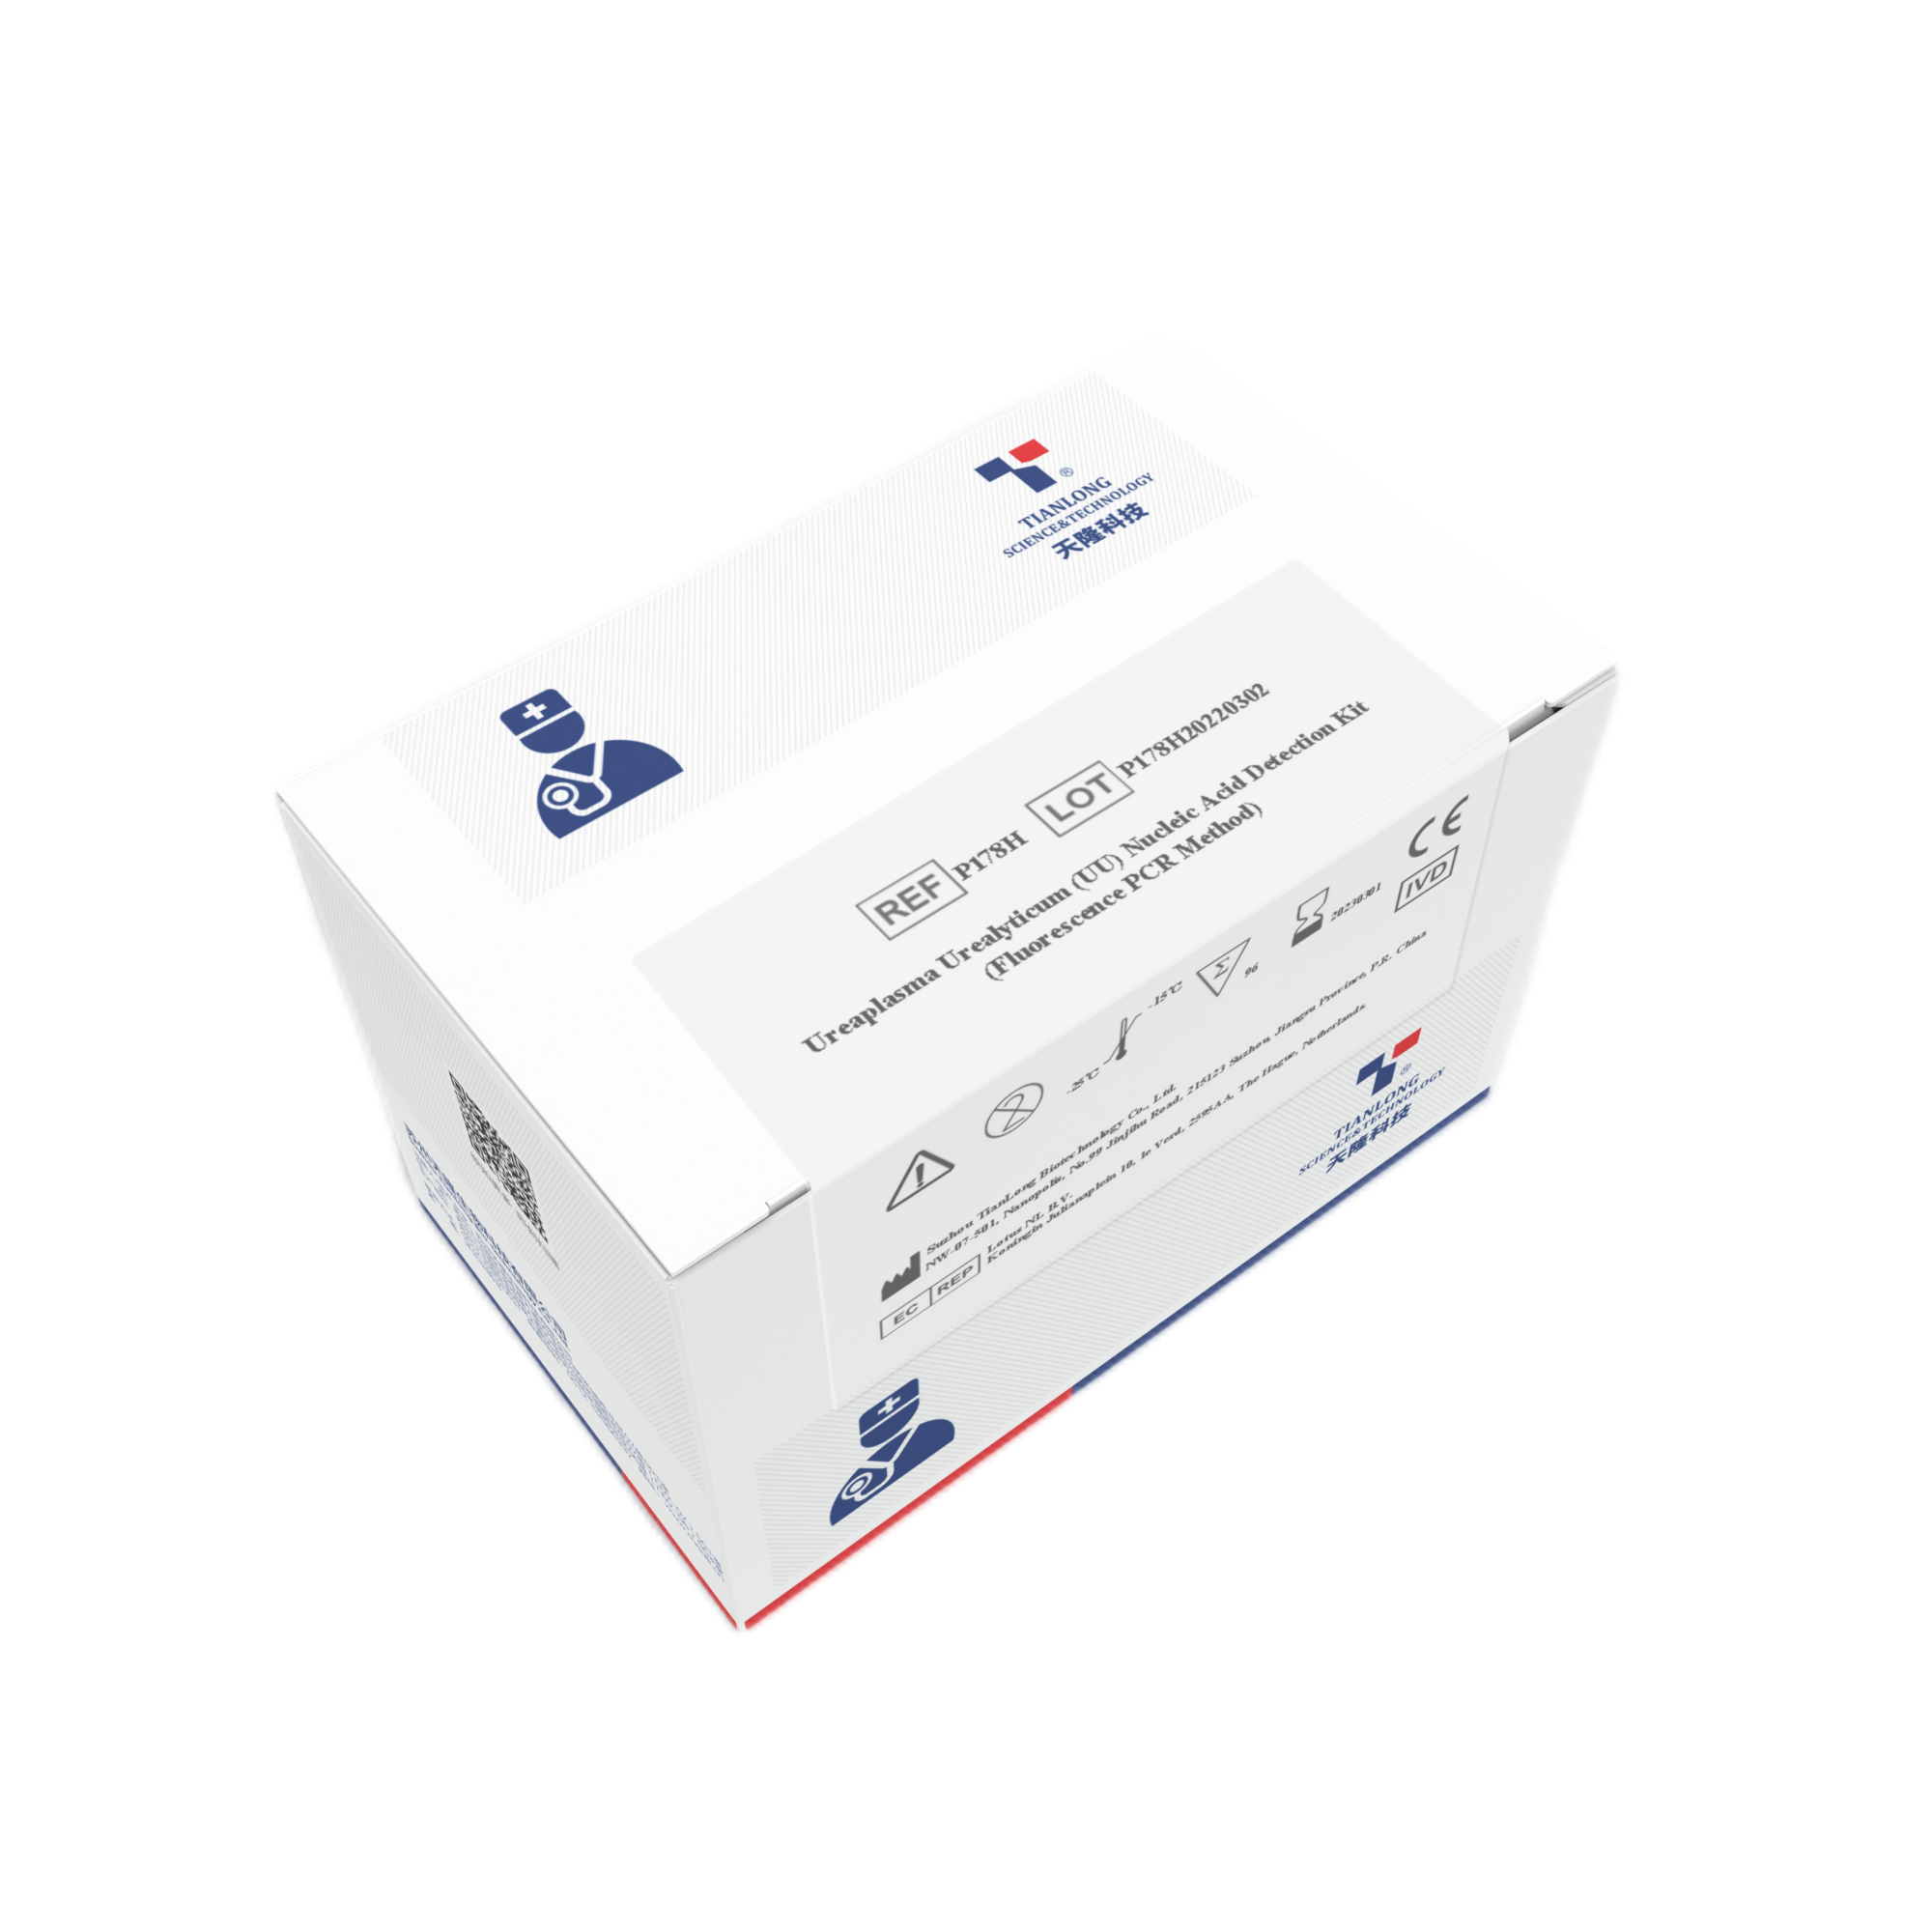 P132H- Kit de Detecção de PCR Multiplex para Infecções Sexualmente Transmissíveis CT/NG/UU/UP